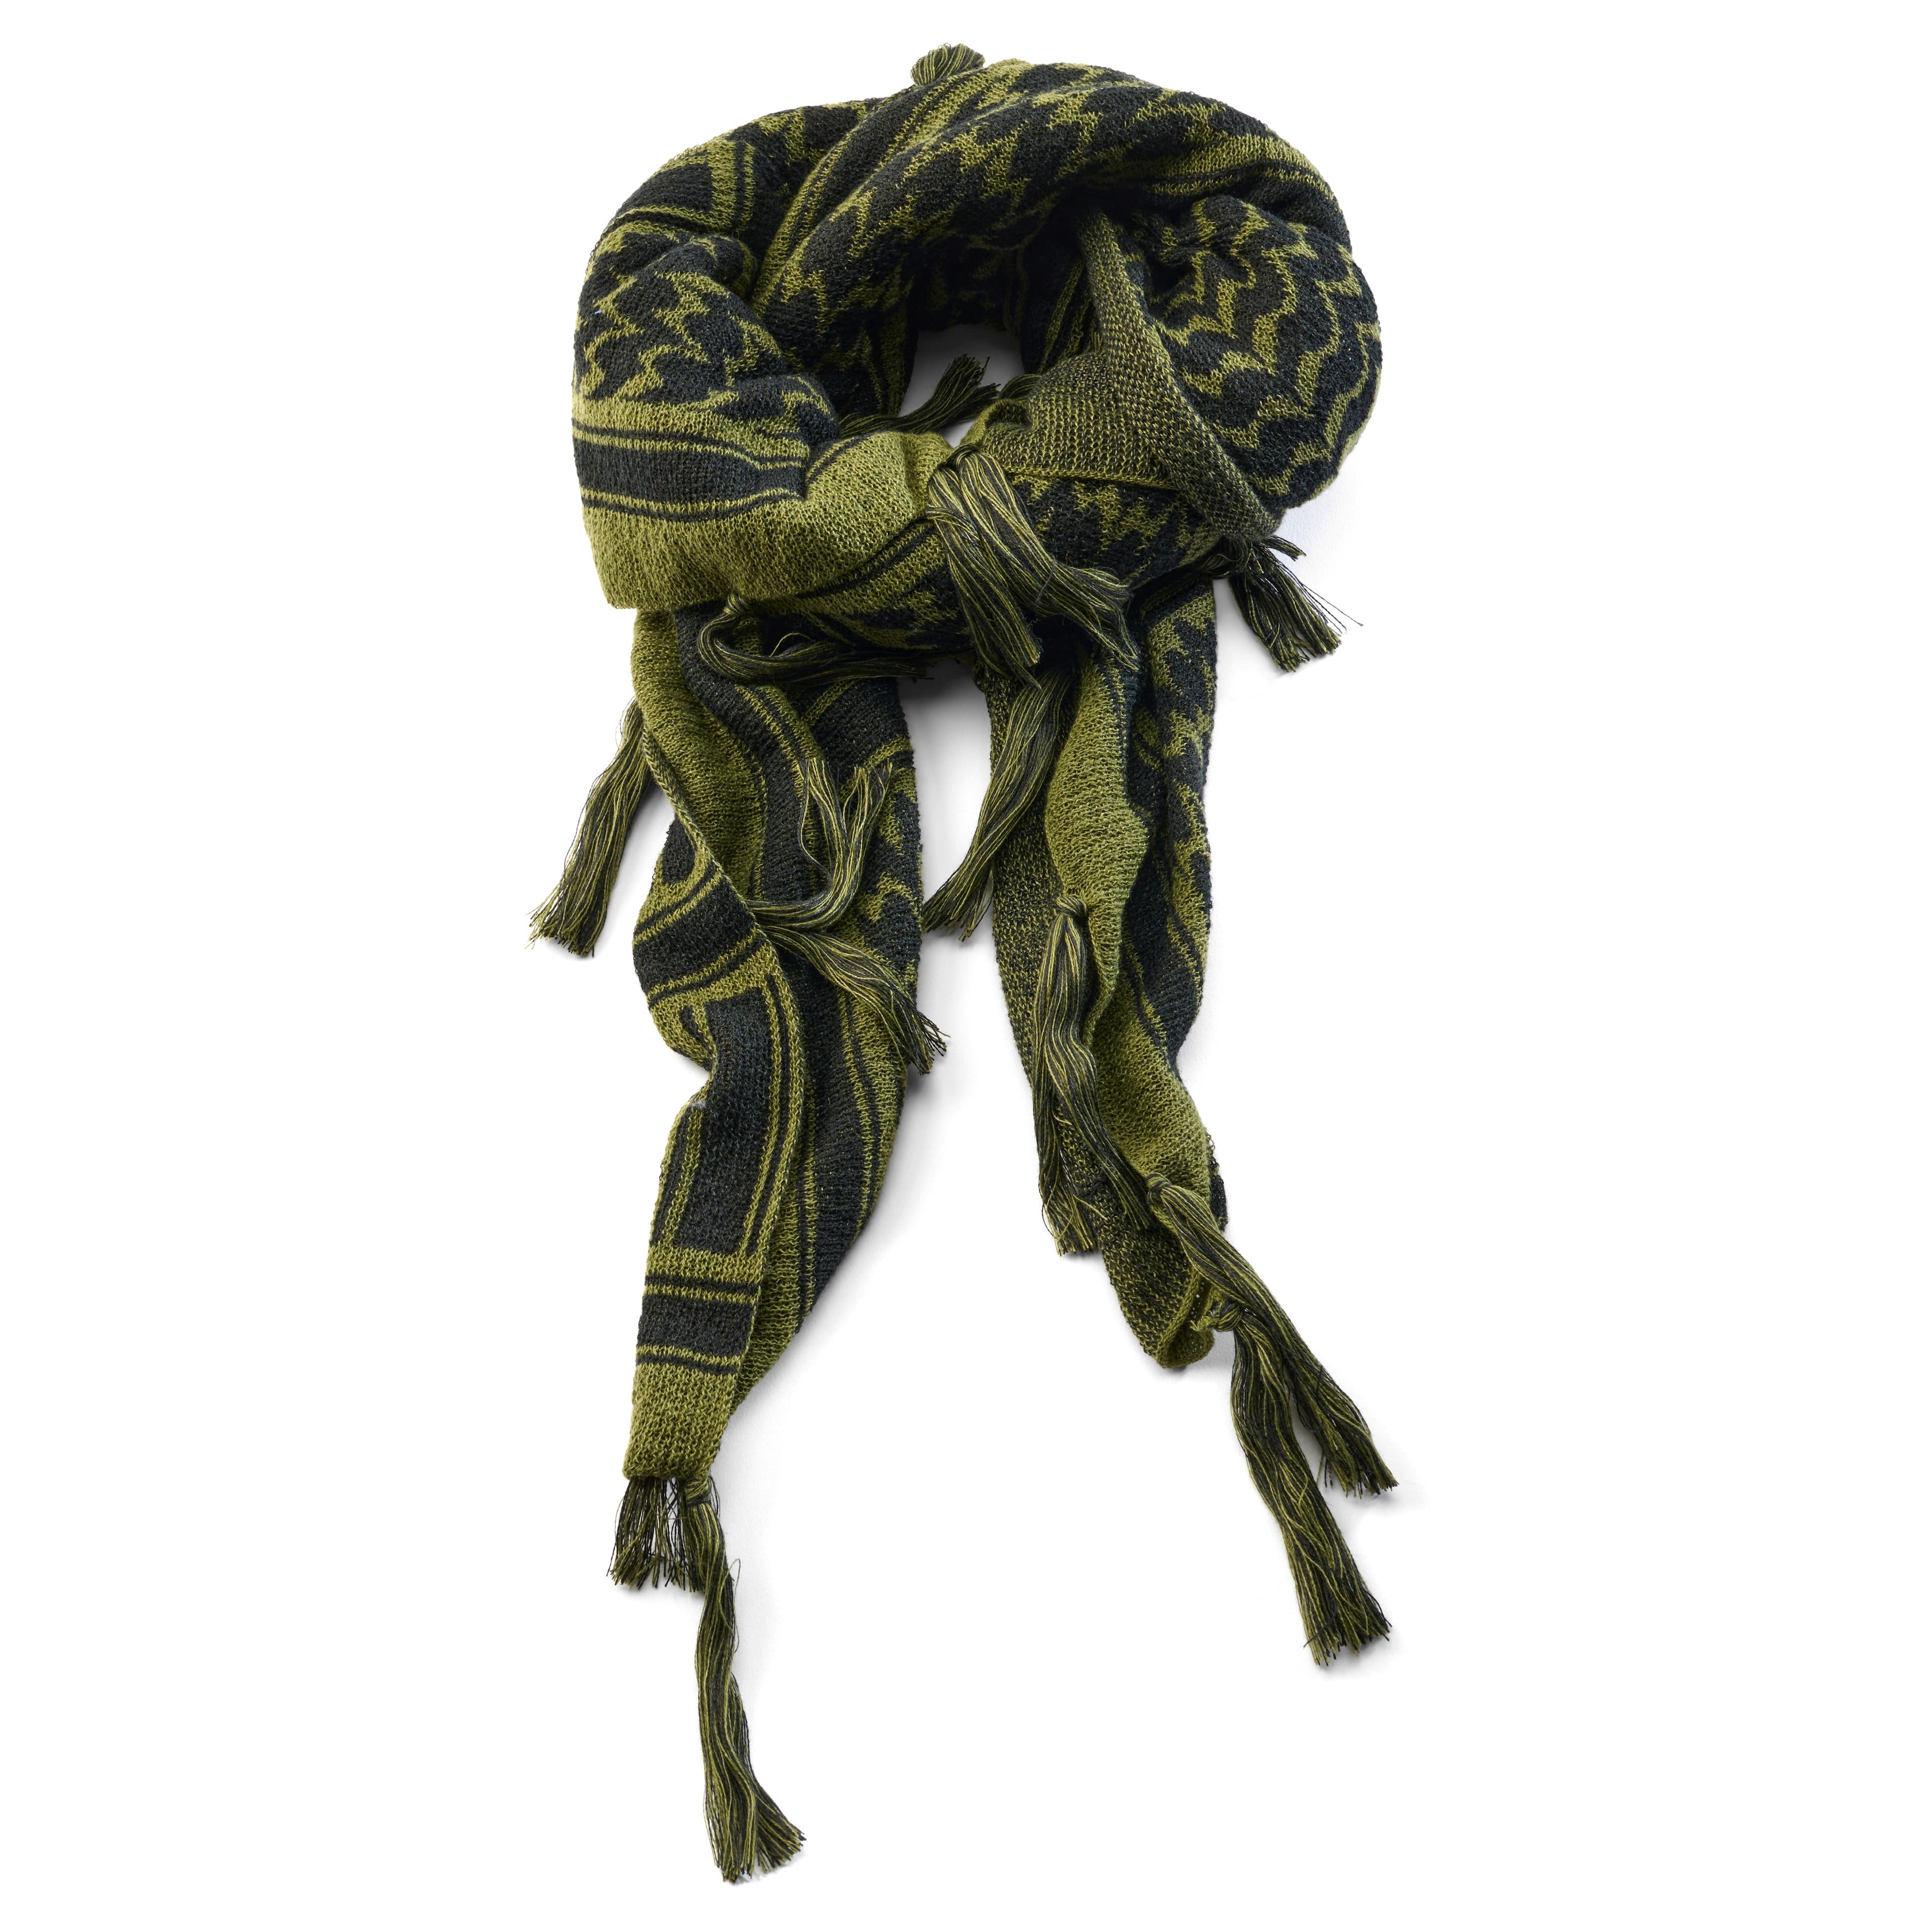 Károvaný šátek bandana v olivově zelené a černé barvě